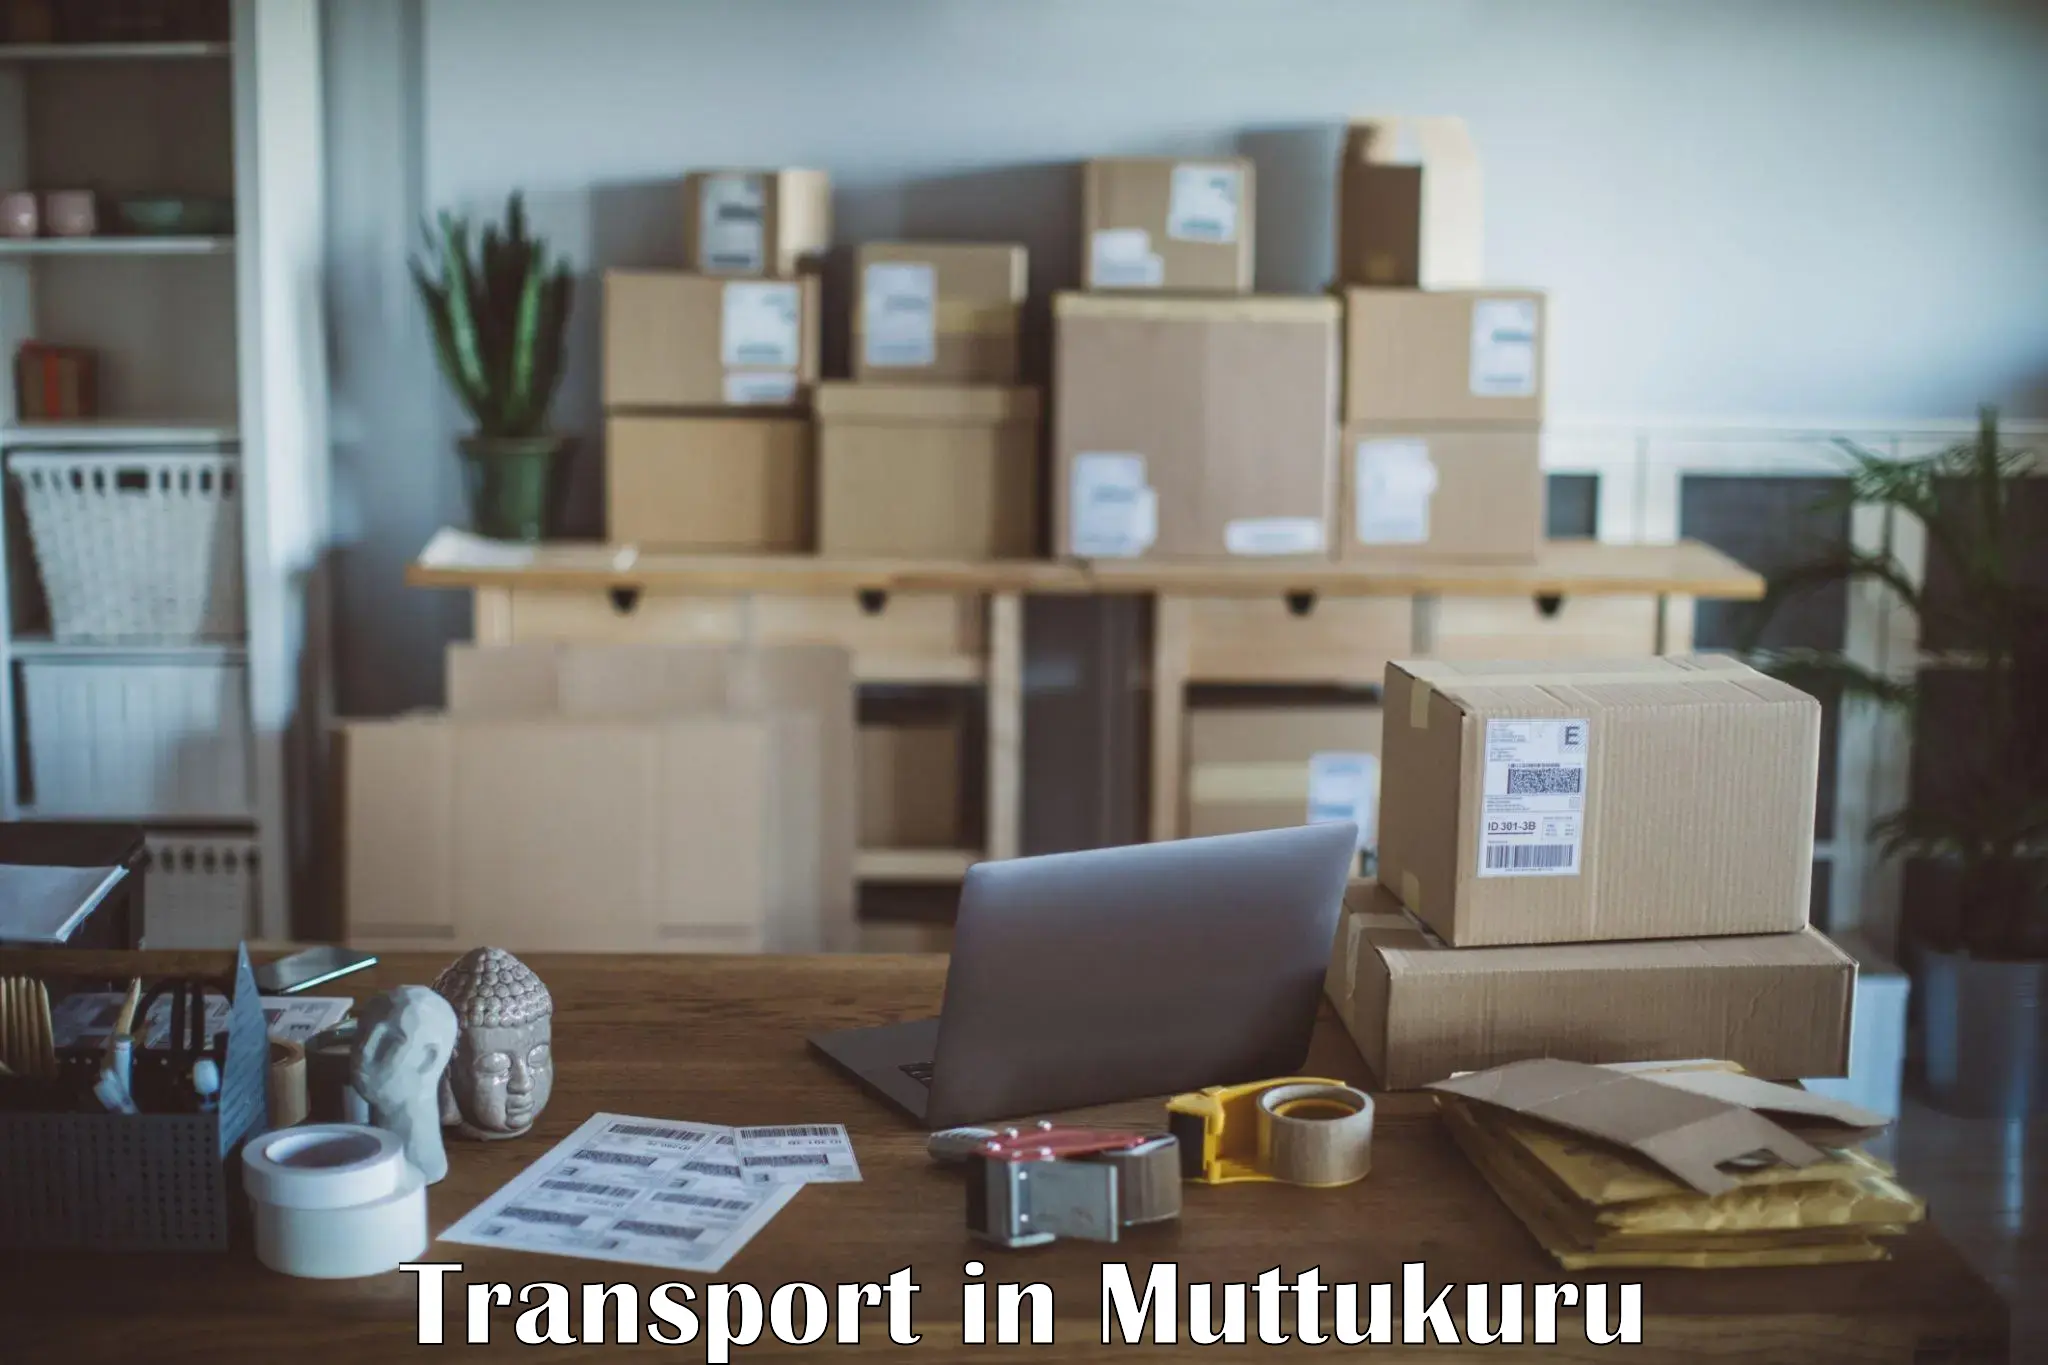 Transportation services in Muttukuru